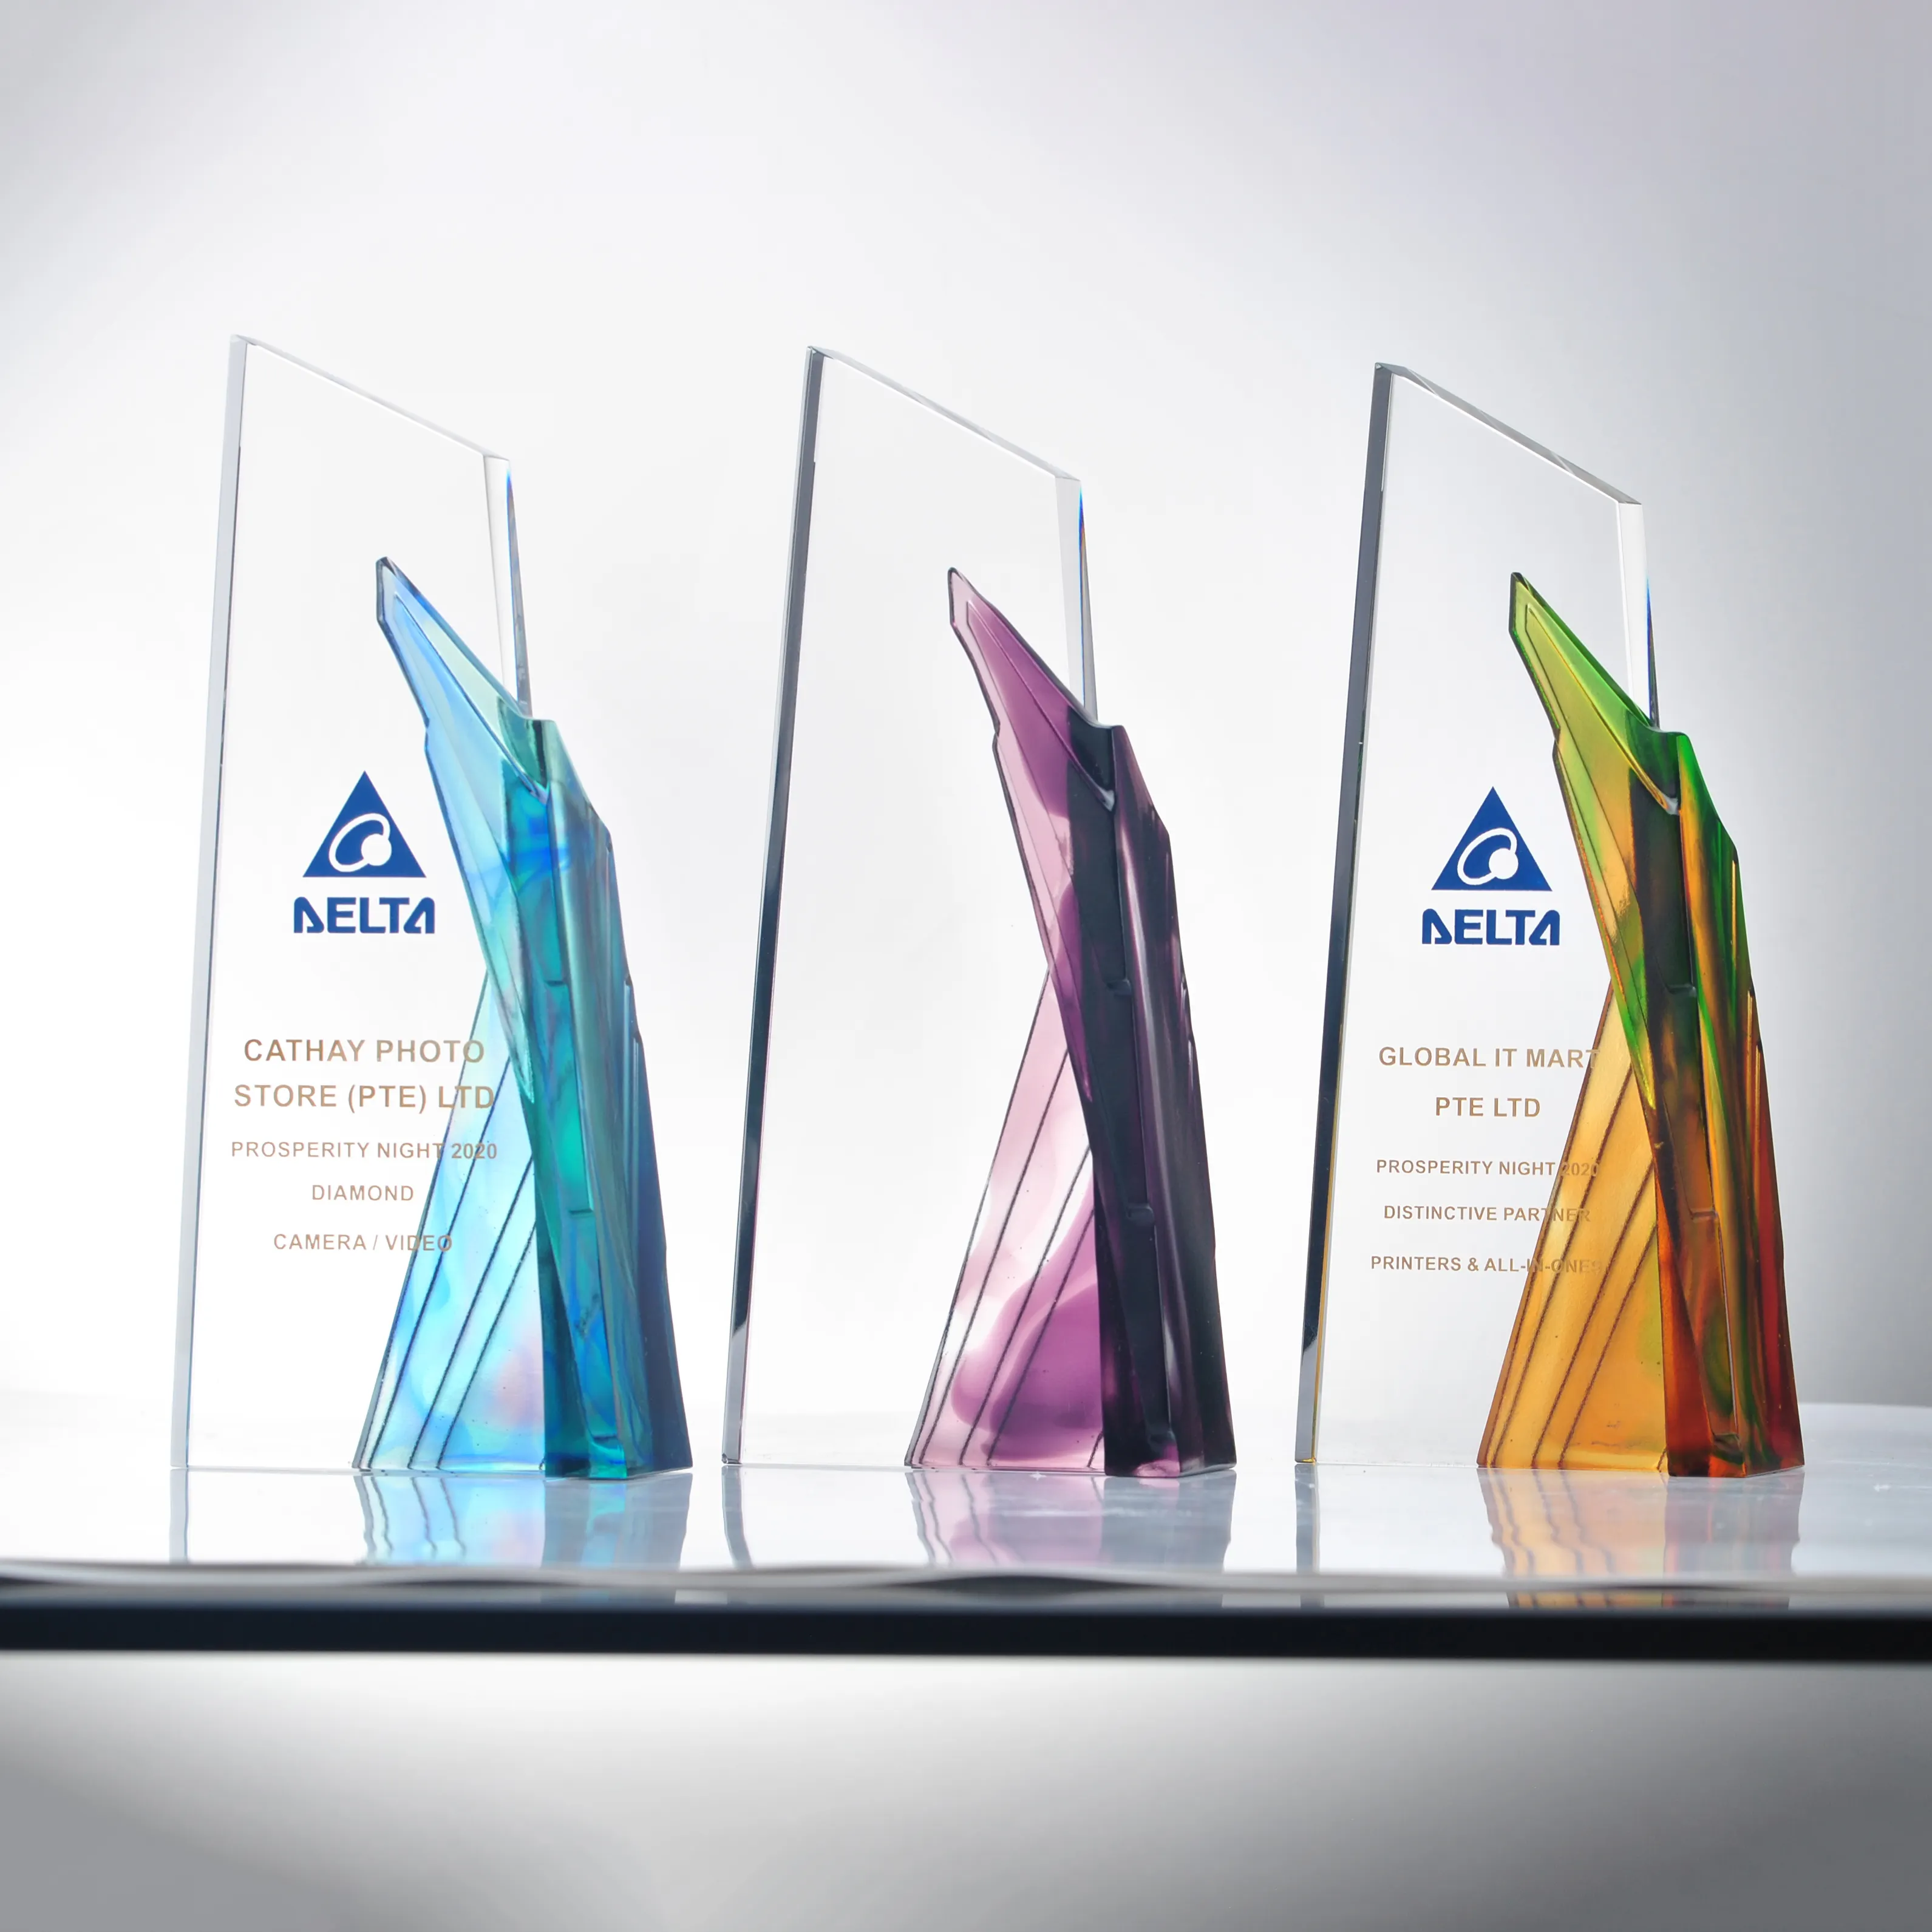 Jadevertu Design personnalisé en gros glaçure colorée spéciale trophée de cristal prix prix gravure texte Souvenir cadeau